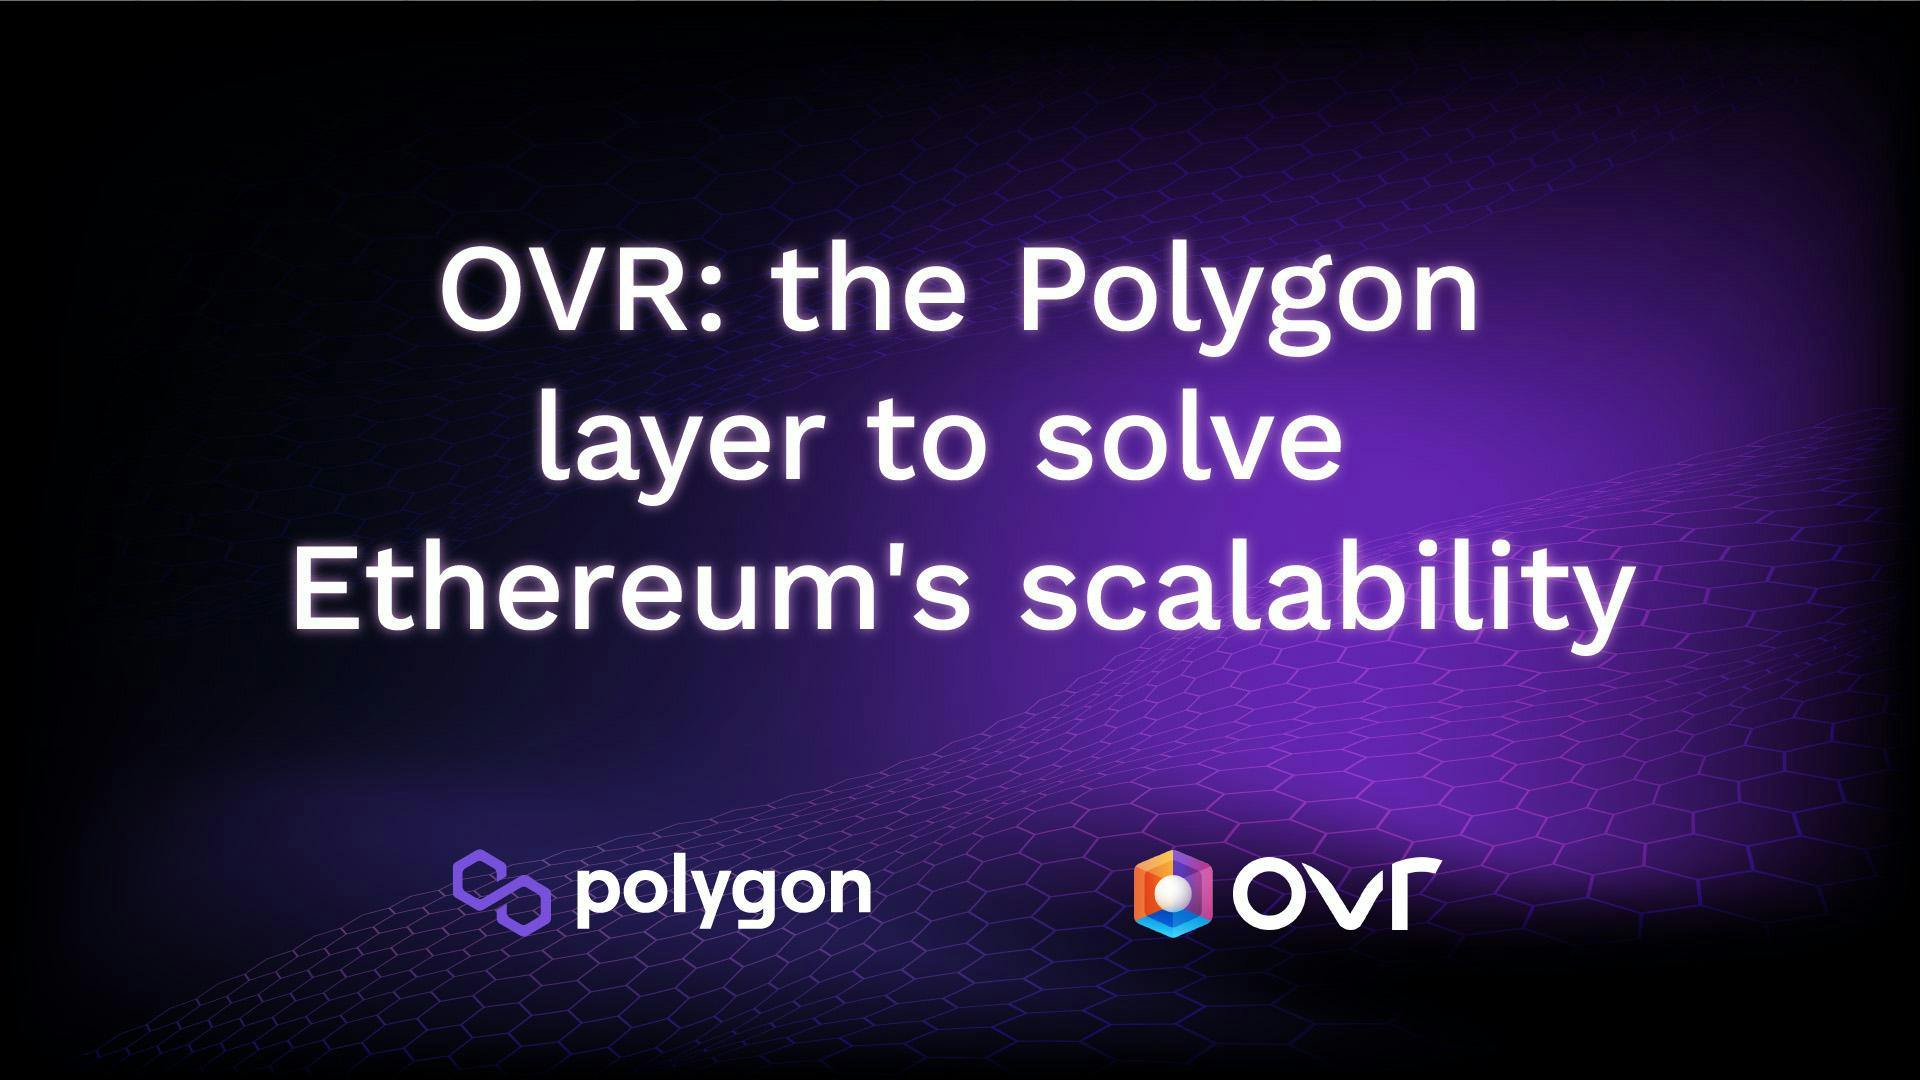 OVER utilisera la Layer Polygon pour résoudre le problème de scalabilité d’Ethereum